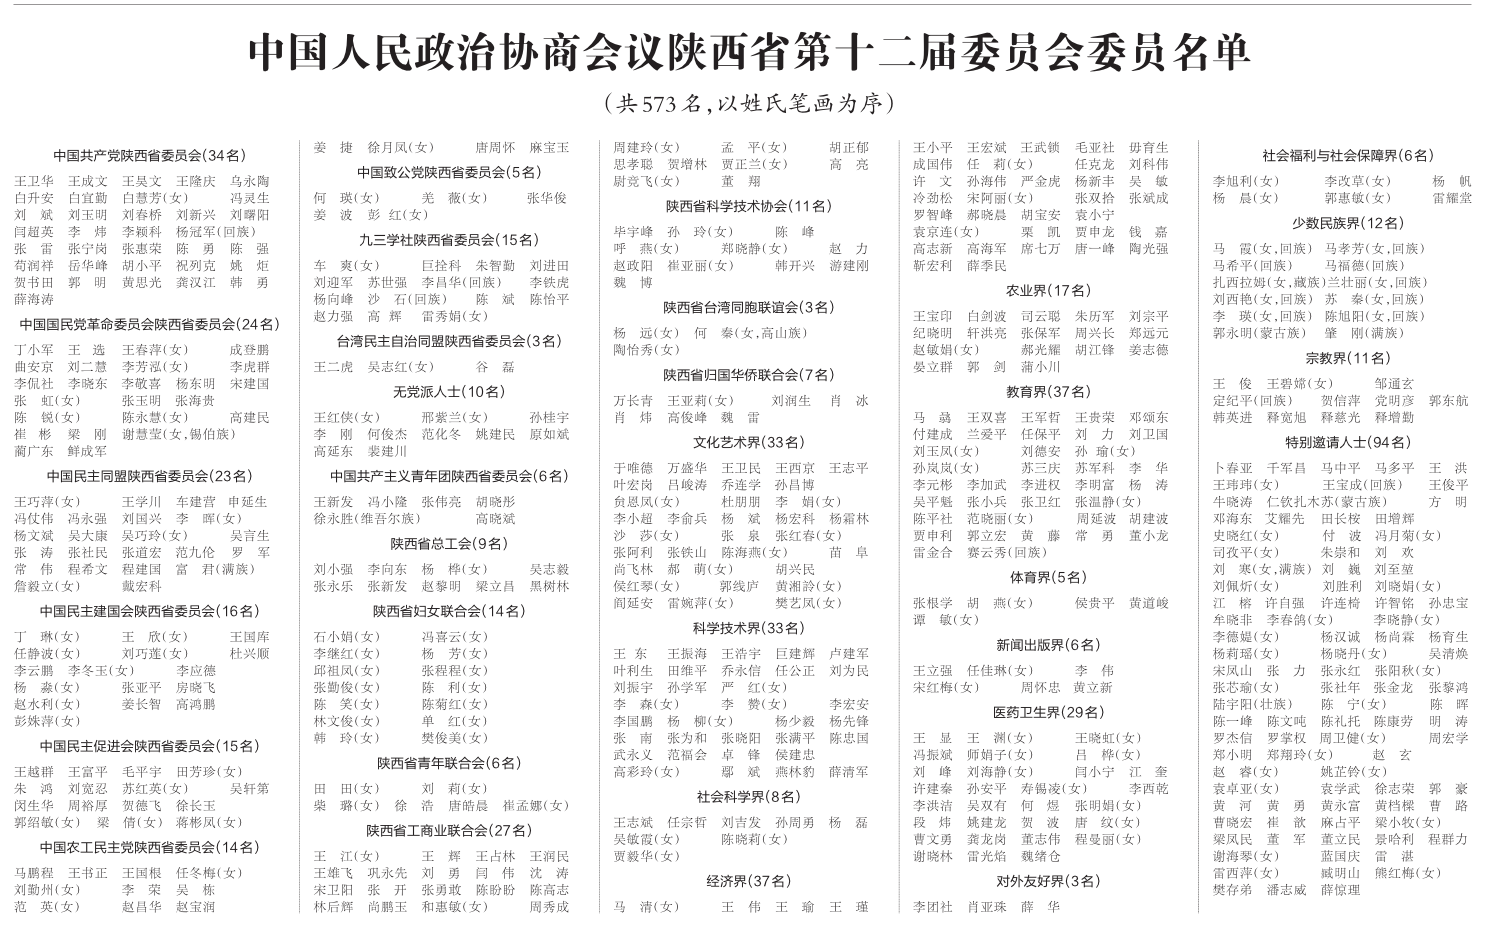 陕西省政协第十二届委员会委员名单